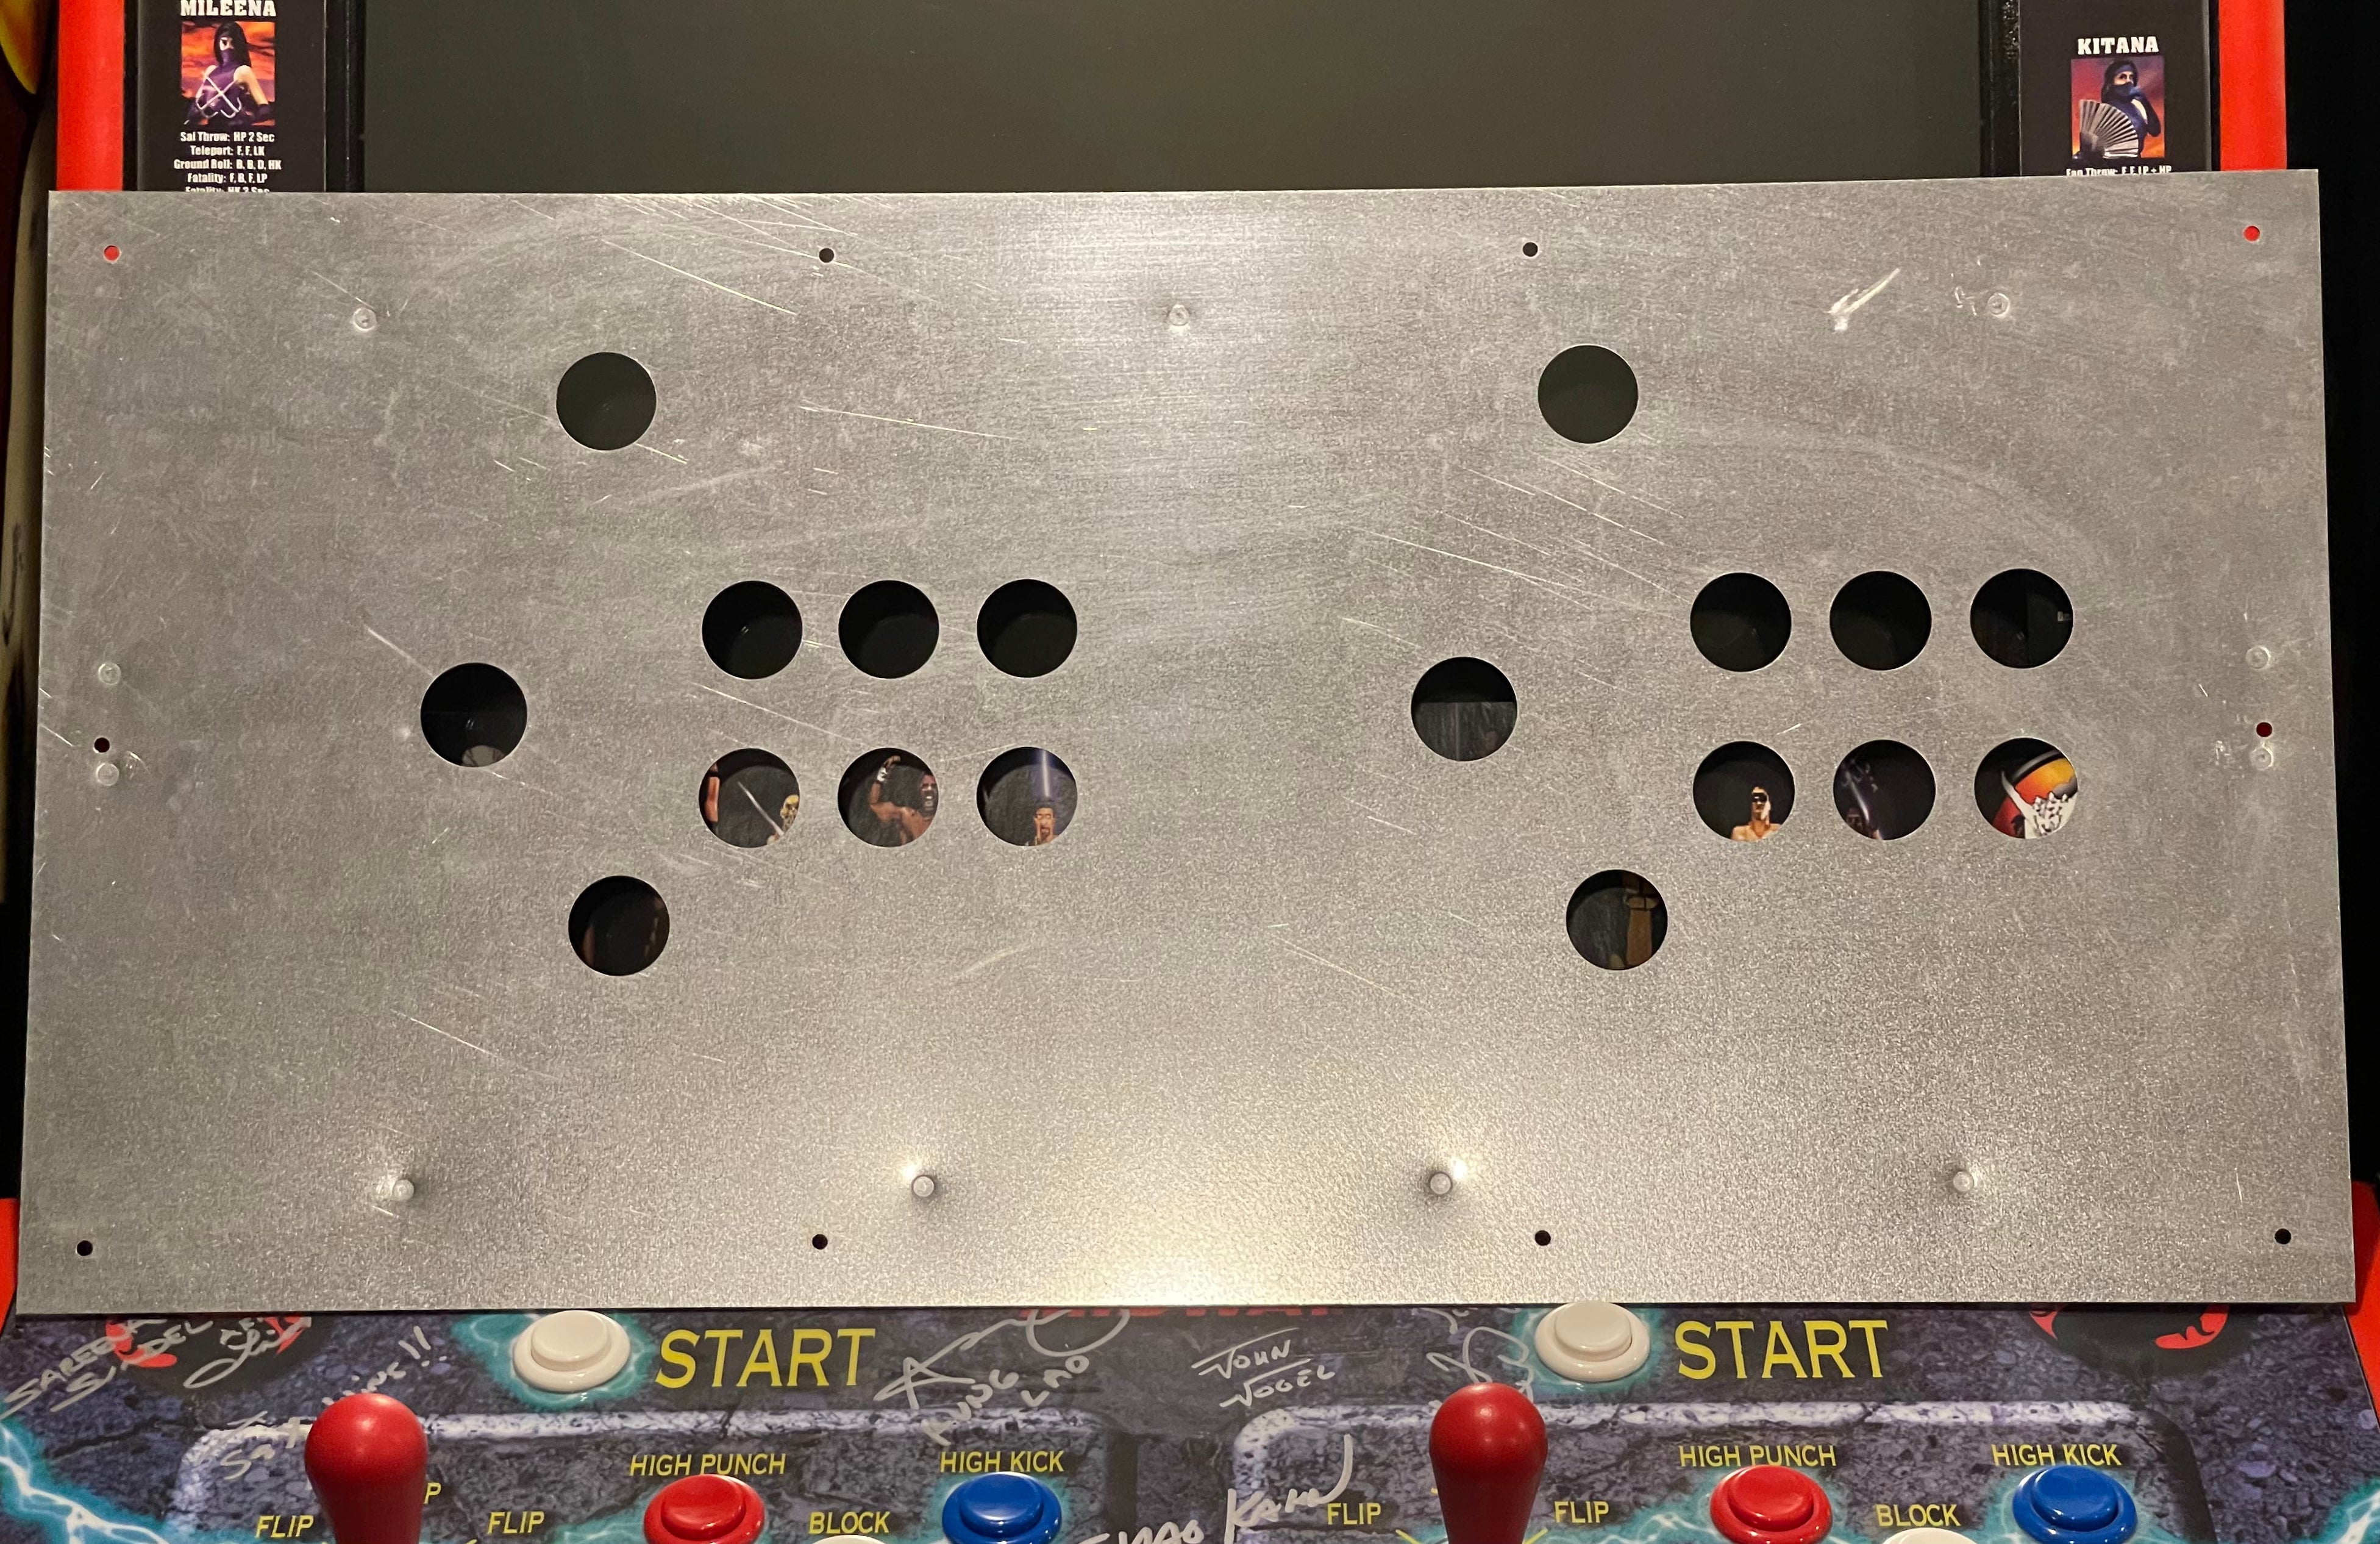 Panel de control metálico de 7 botones estilo Mortal Kombat